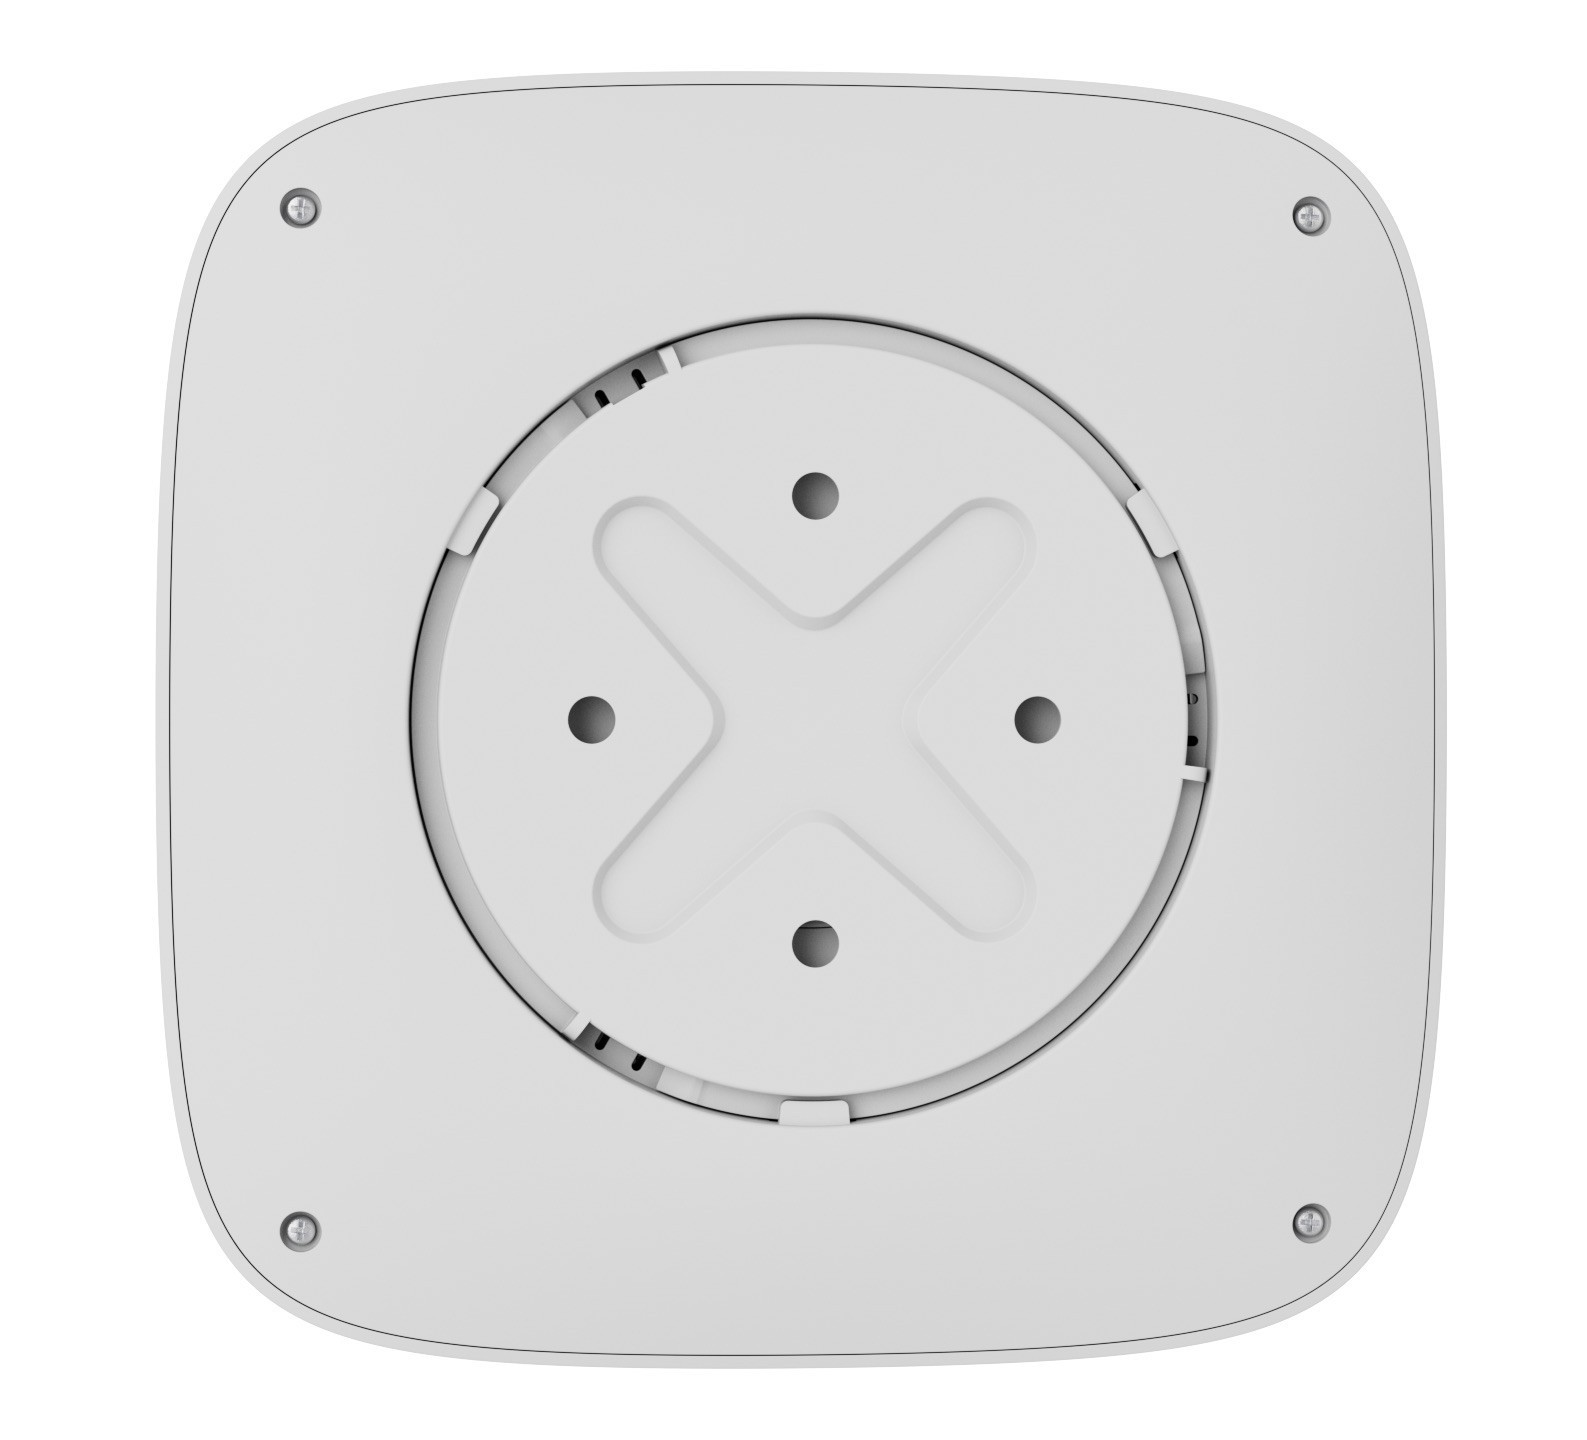 Беспроводной датчик дыма и температуры Ajax FireProtect 2 SB (Heat/Smoke) White инструкция - изображение 6